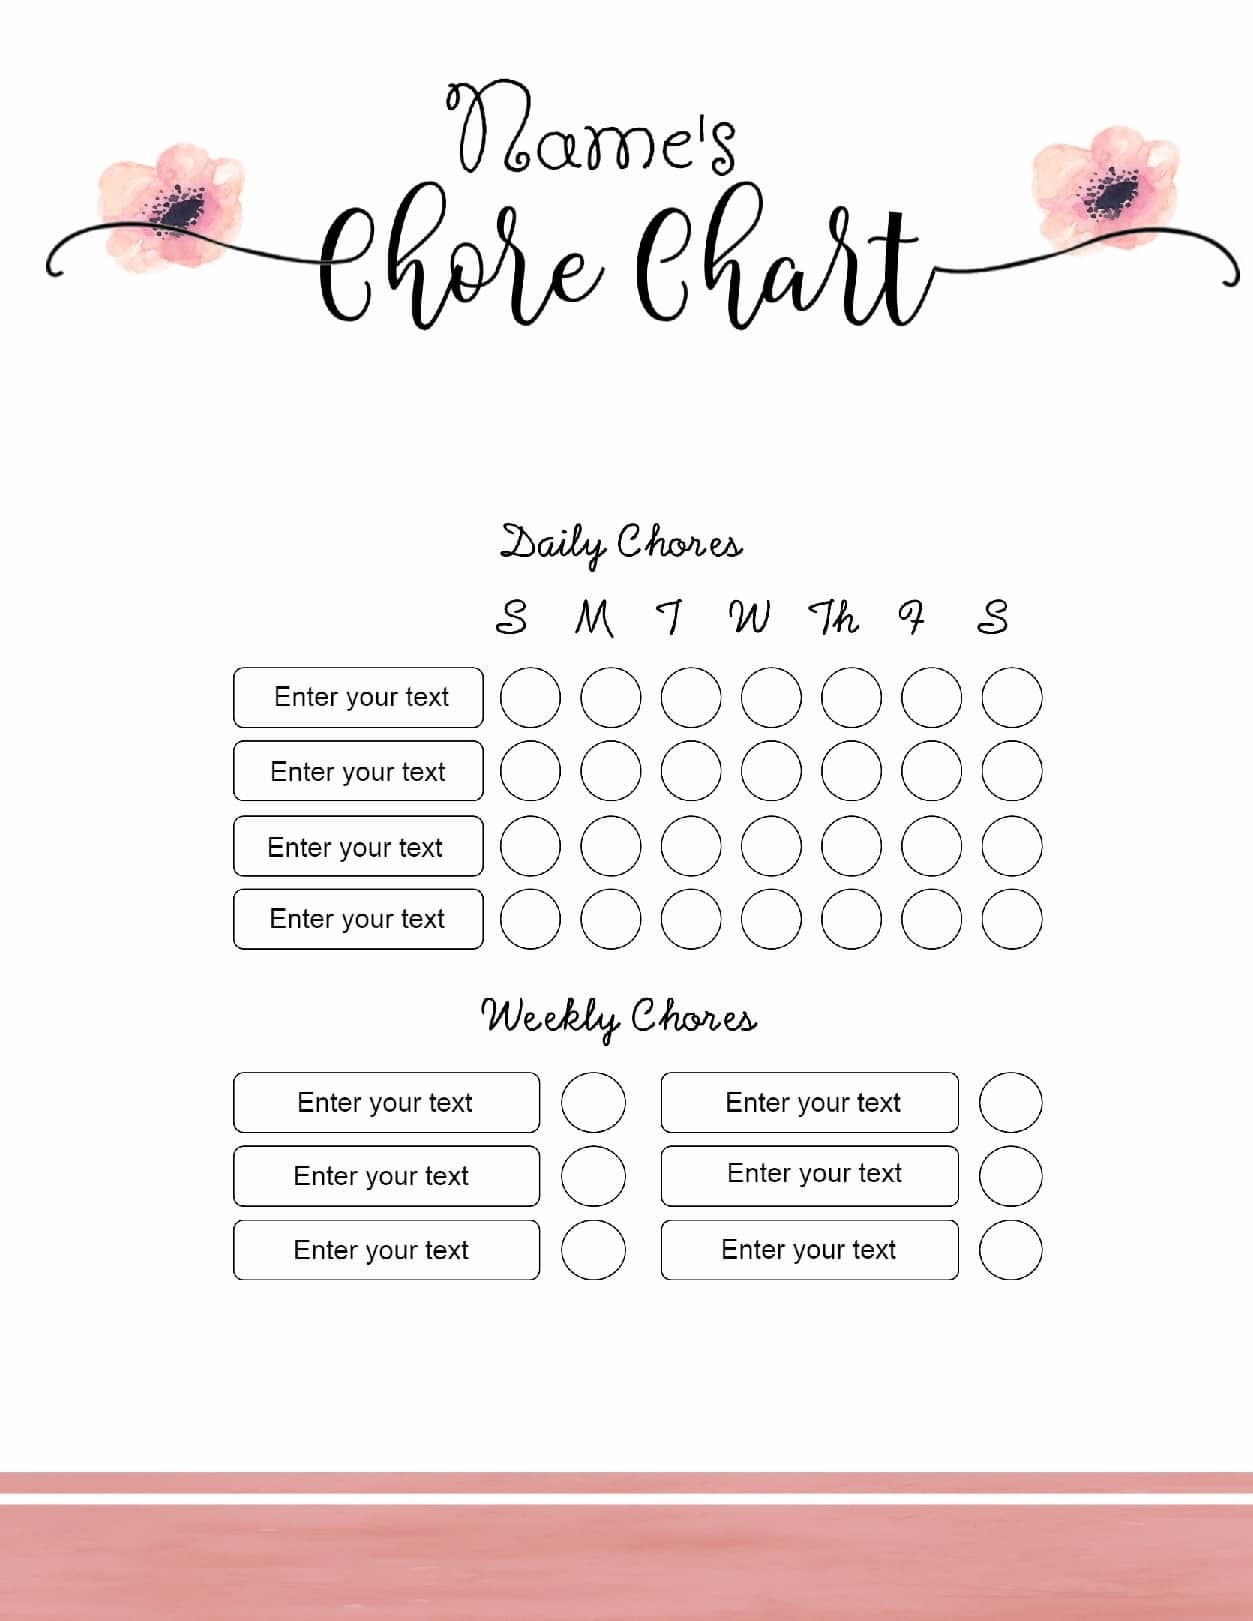 Chore Chart Layout